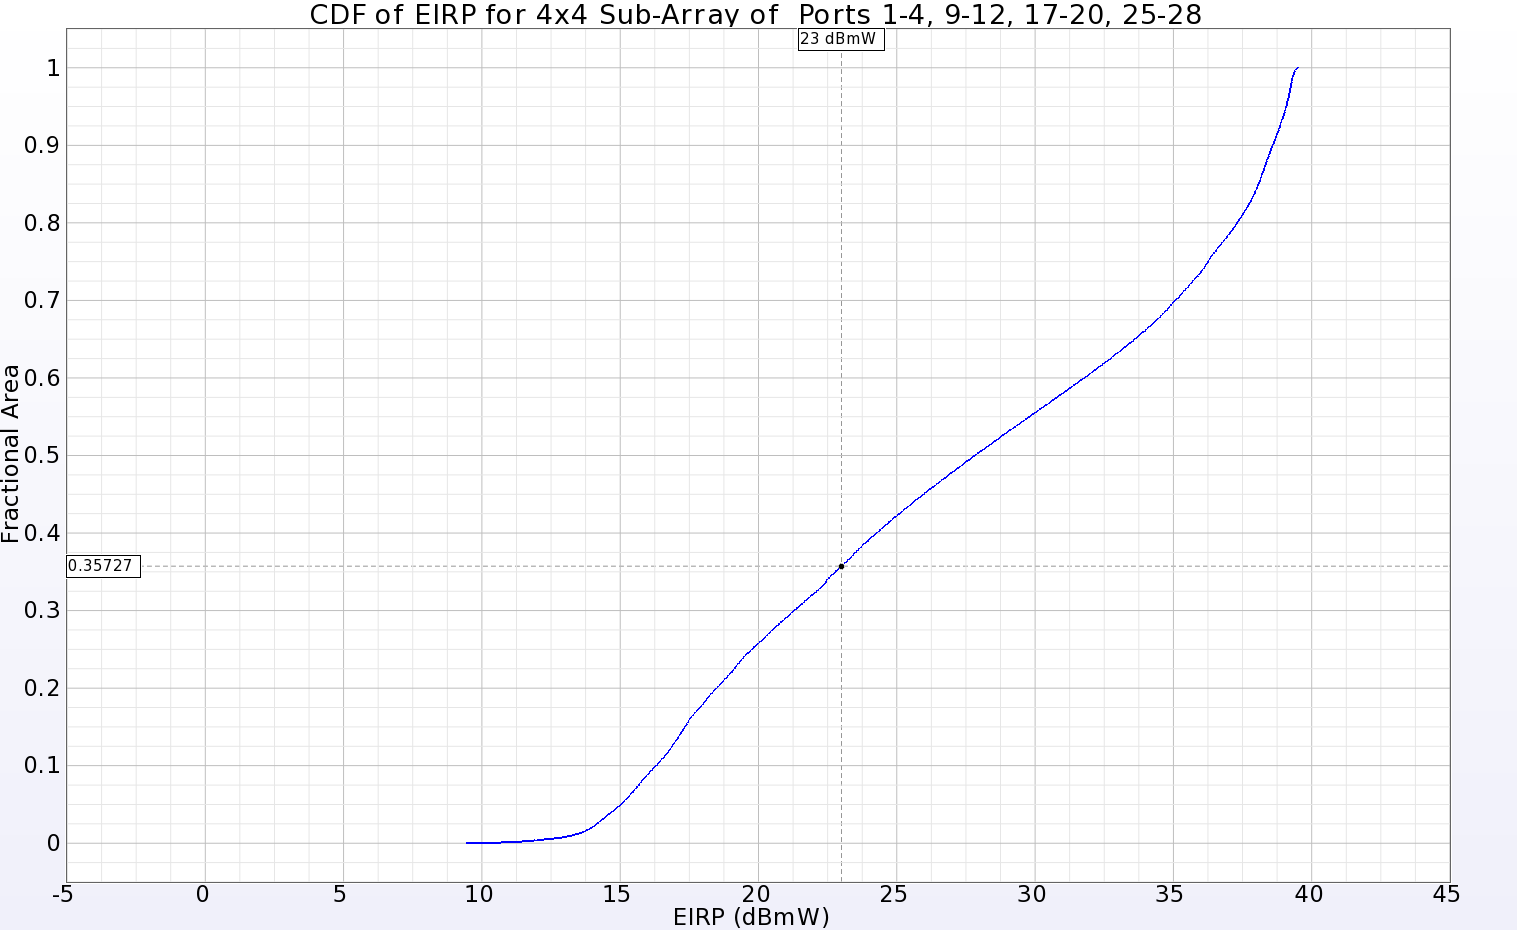 图 12：位于主阵列一个象限的 4x4 子阵列的 EIRP CDF 图，显示在输入功率为 23 dBmW 时，远区球面 64.3% 的范围内均为正增益。